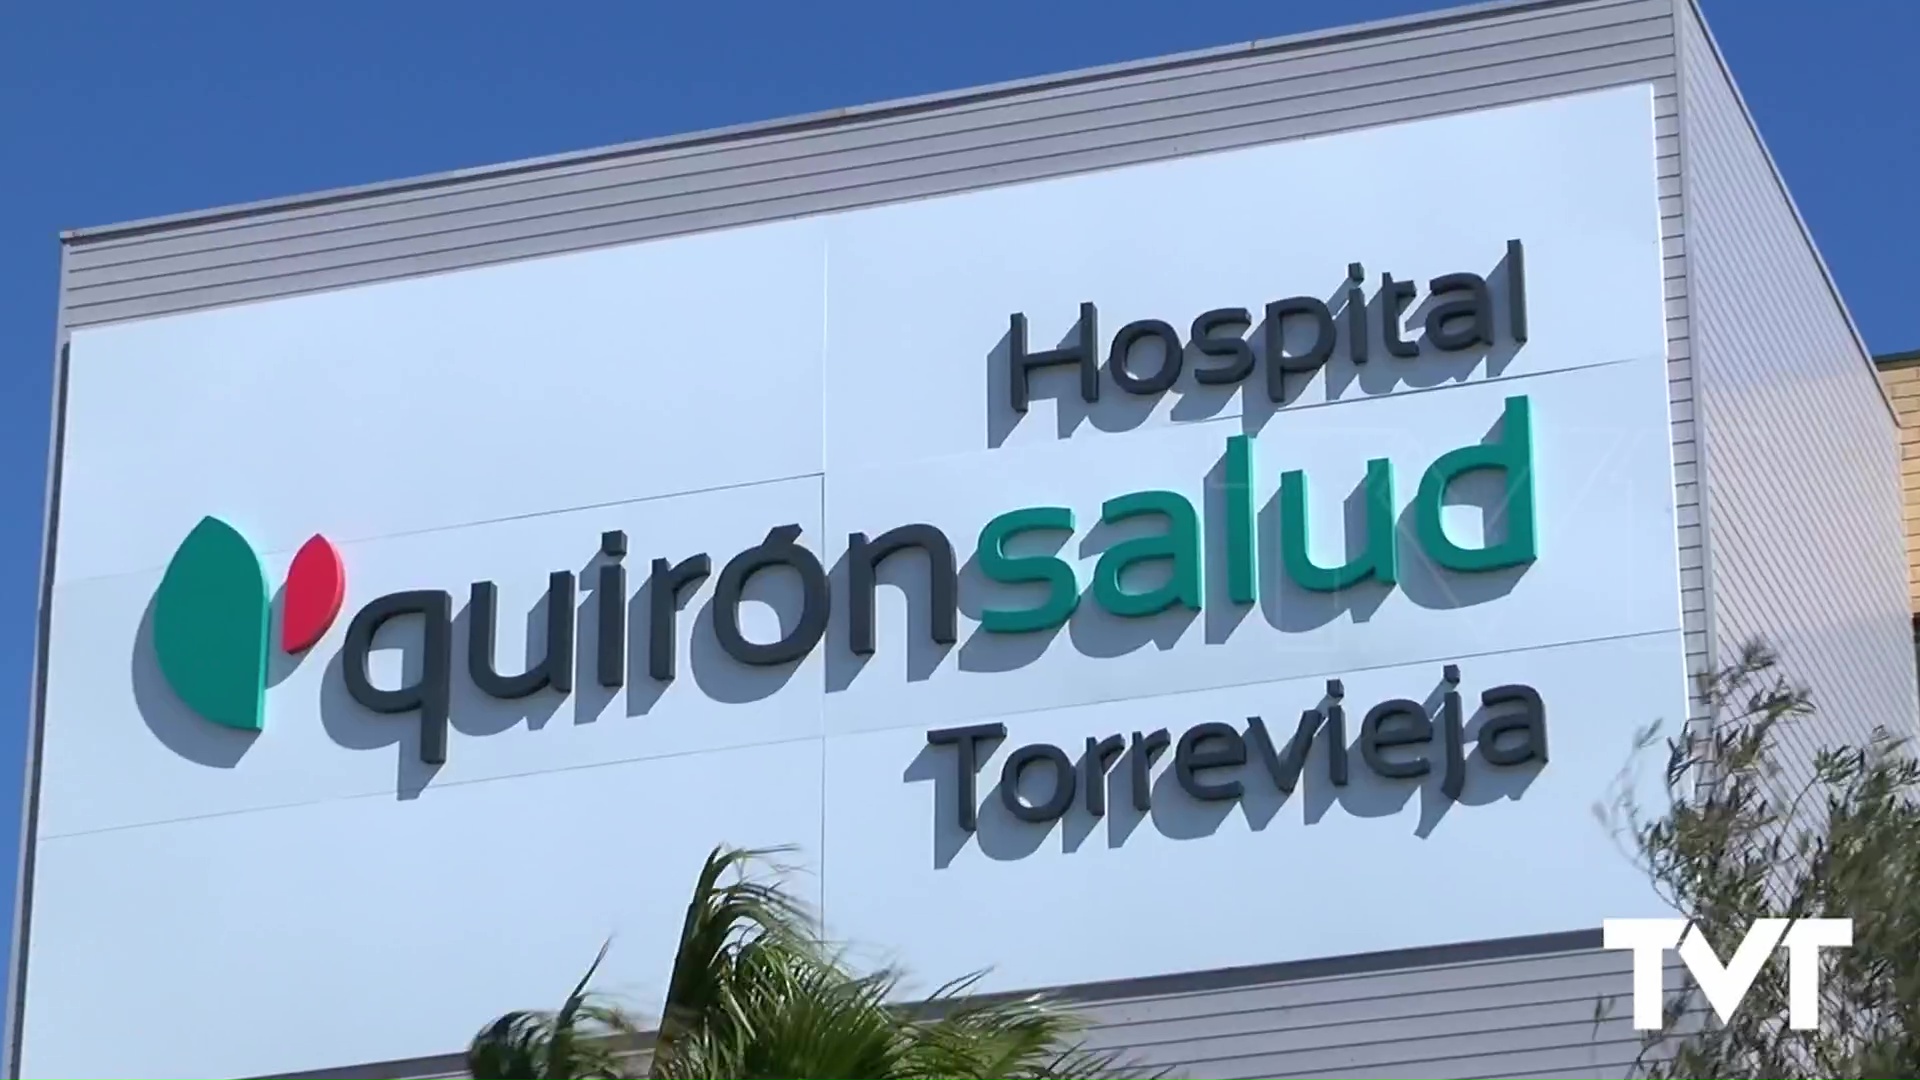 Imagen de El Hospital Quirónsalud Torrevieja en el Top 5 de los mejores hospitales de la Comunidad Valenciana